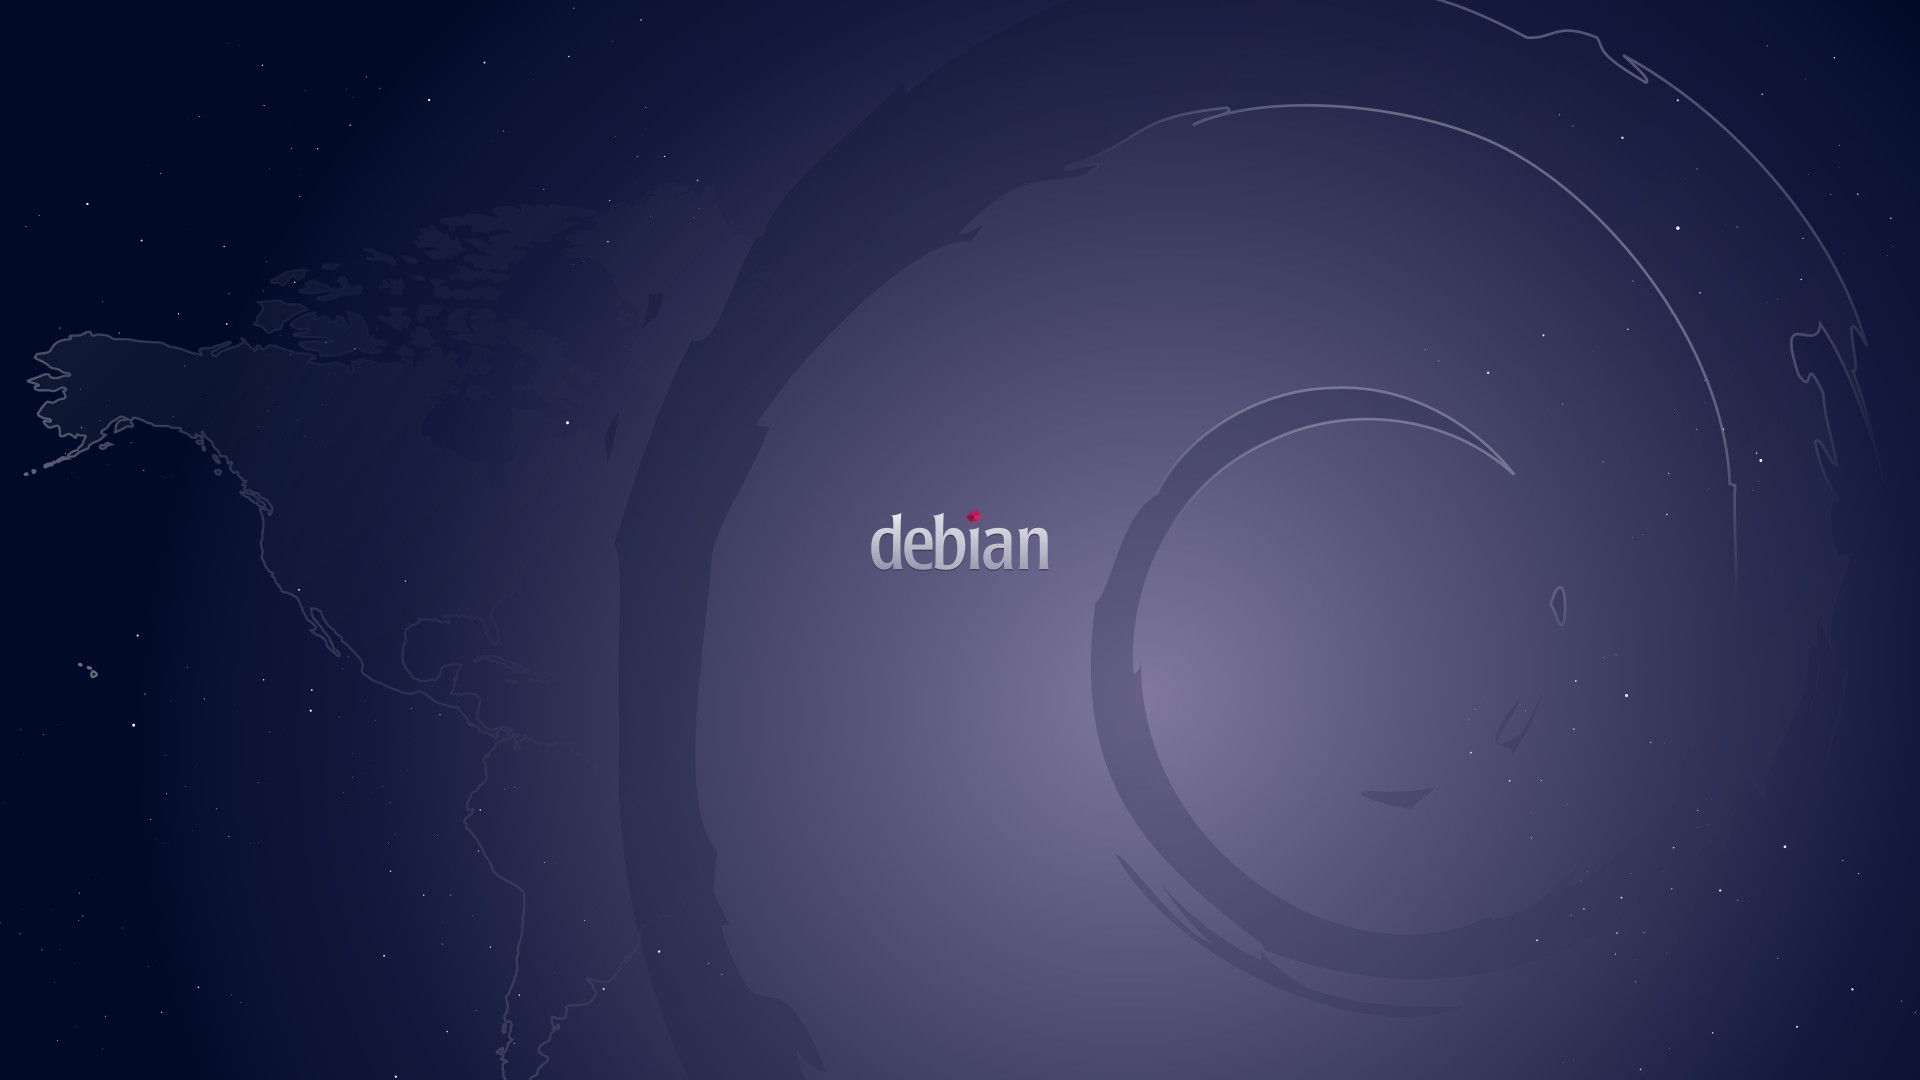 1920x1080 Debian Wallpaper FullHD 1080p by fernandomo Debian Wallpaper FullHD 1080p  by fernandomo